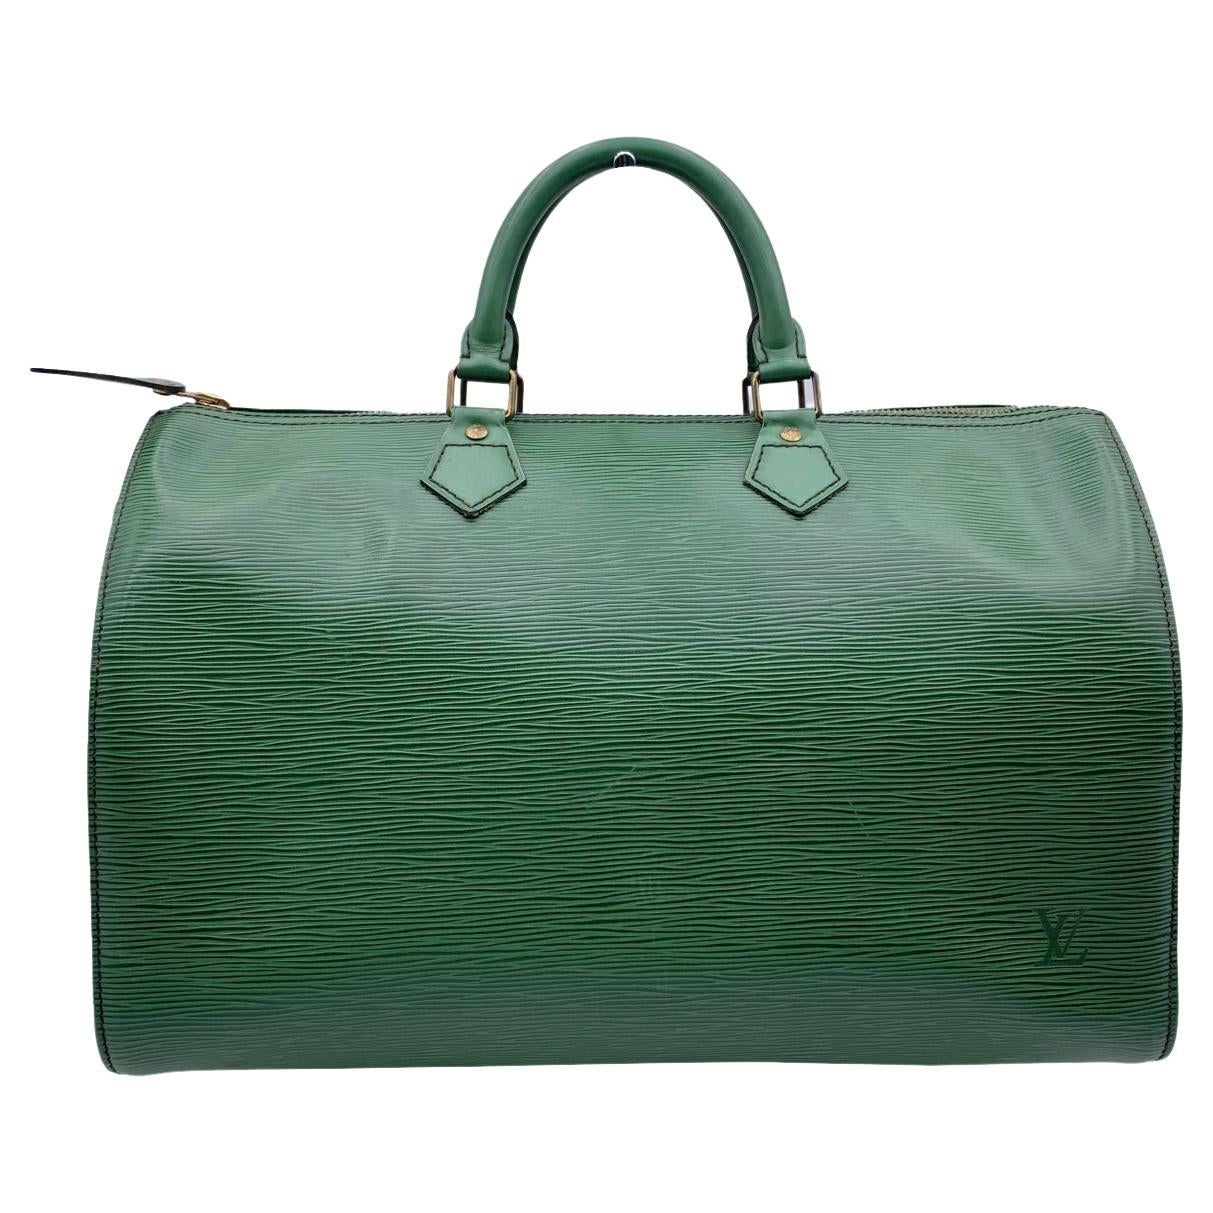 Louis Vuitton Vintage Green Epi Leather Speedy 35 Boston Bag Handbag